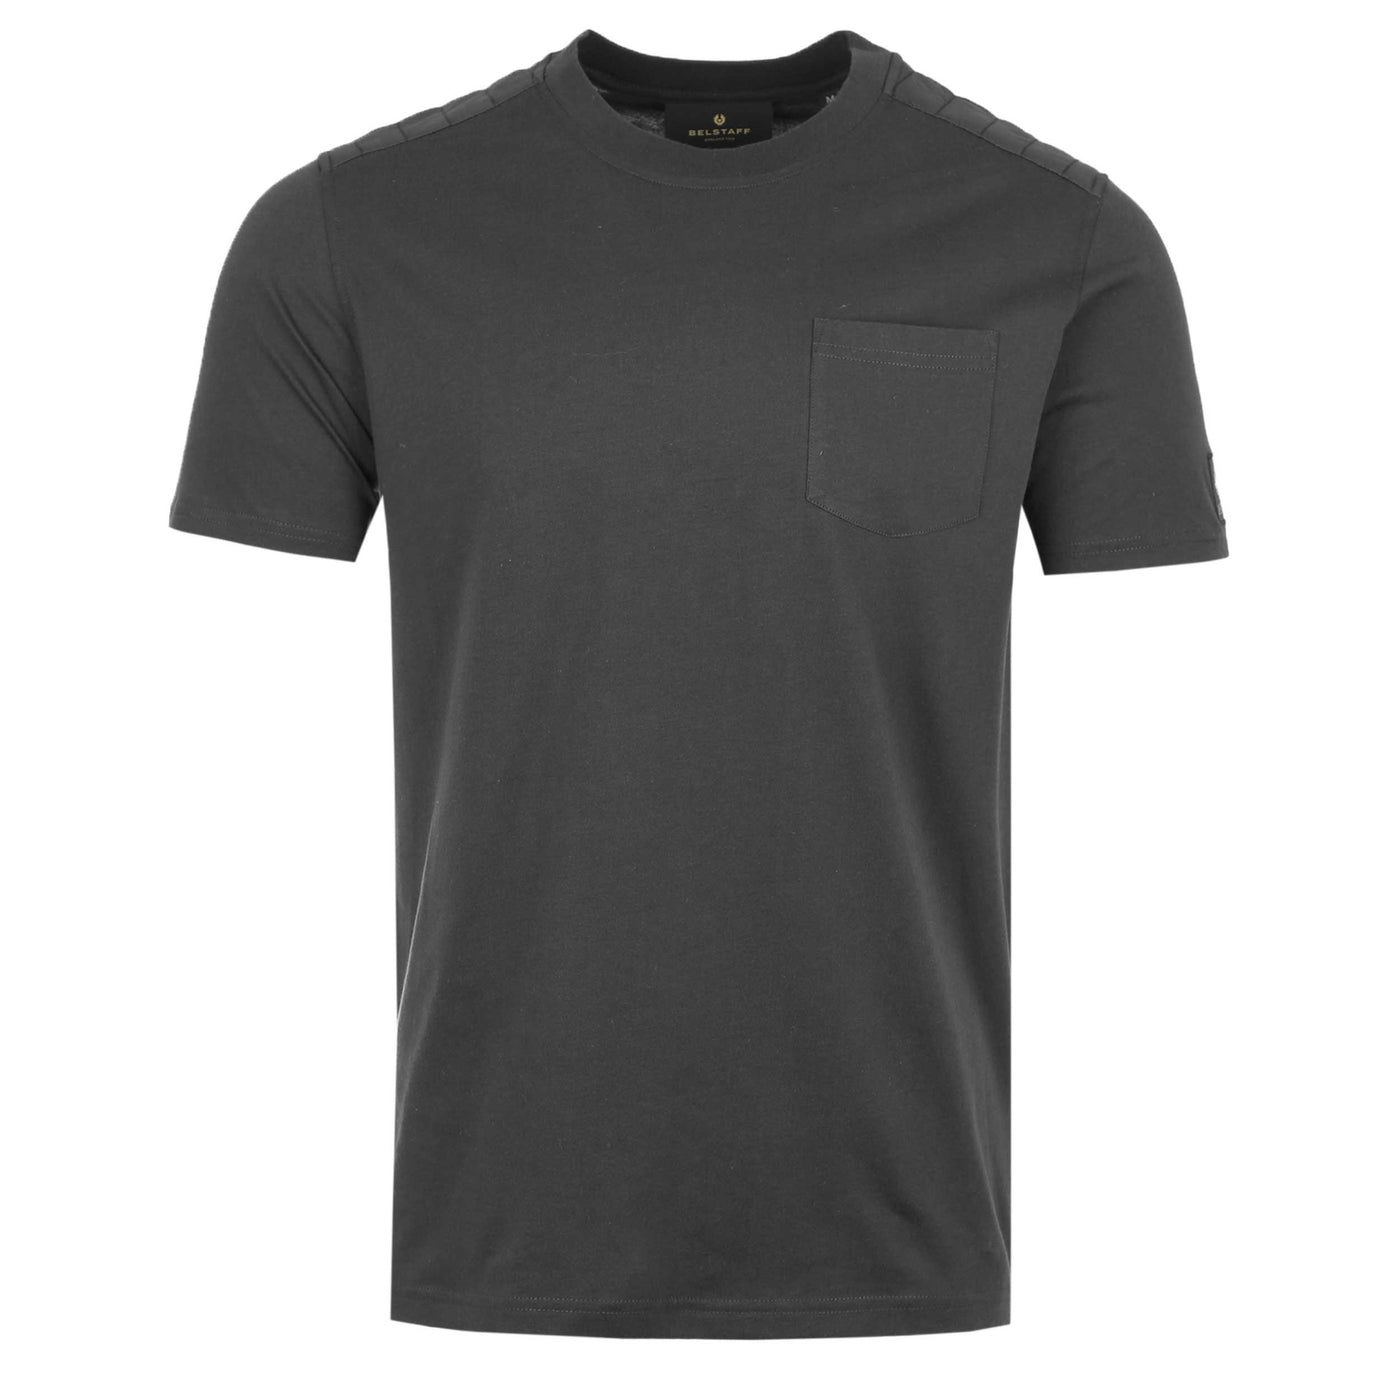 Belstaff Racing T-Shirt in Black